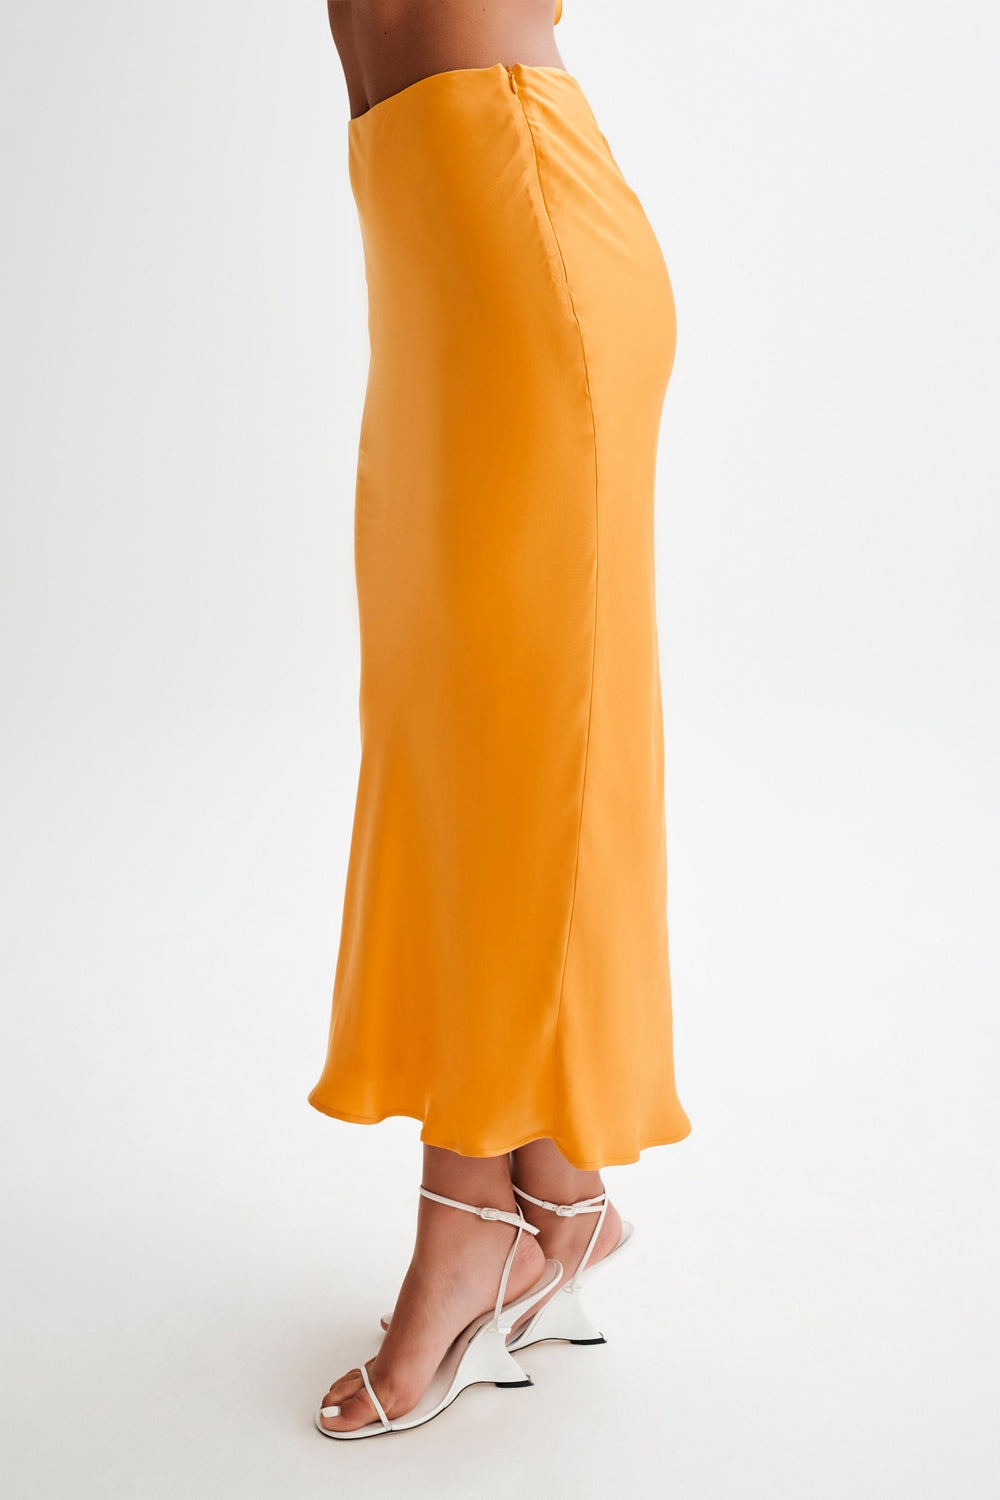 Viviana Satin Maxi Skirt - Tangerine